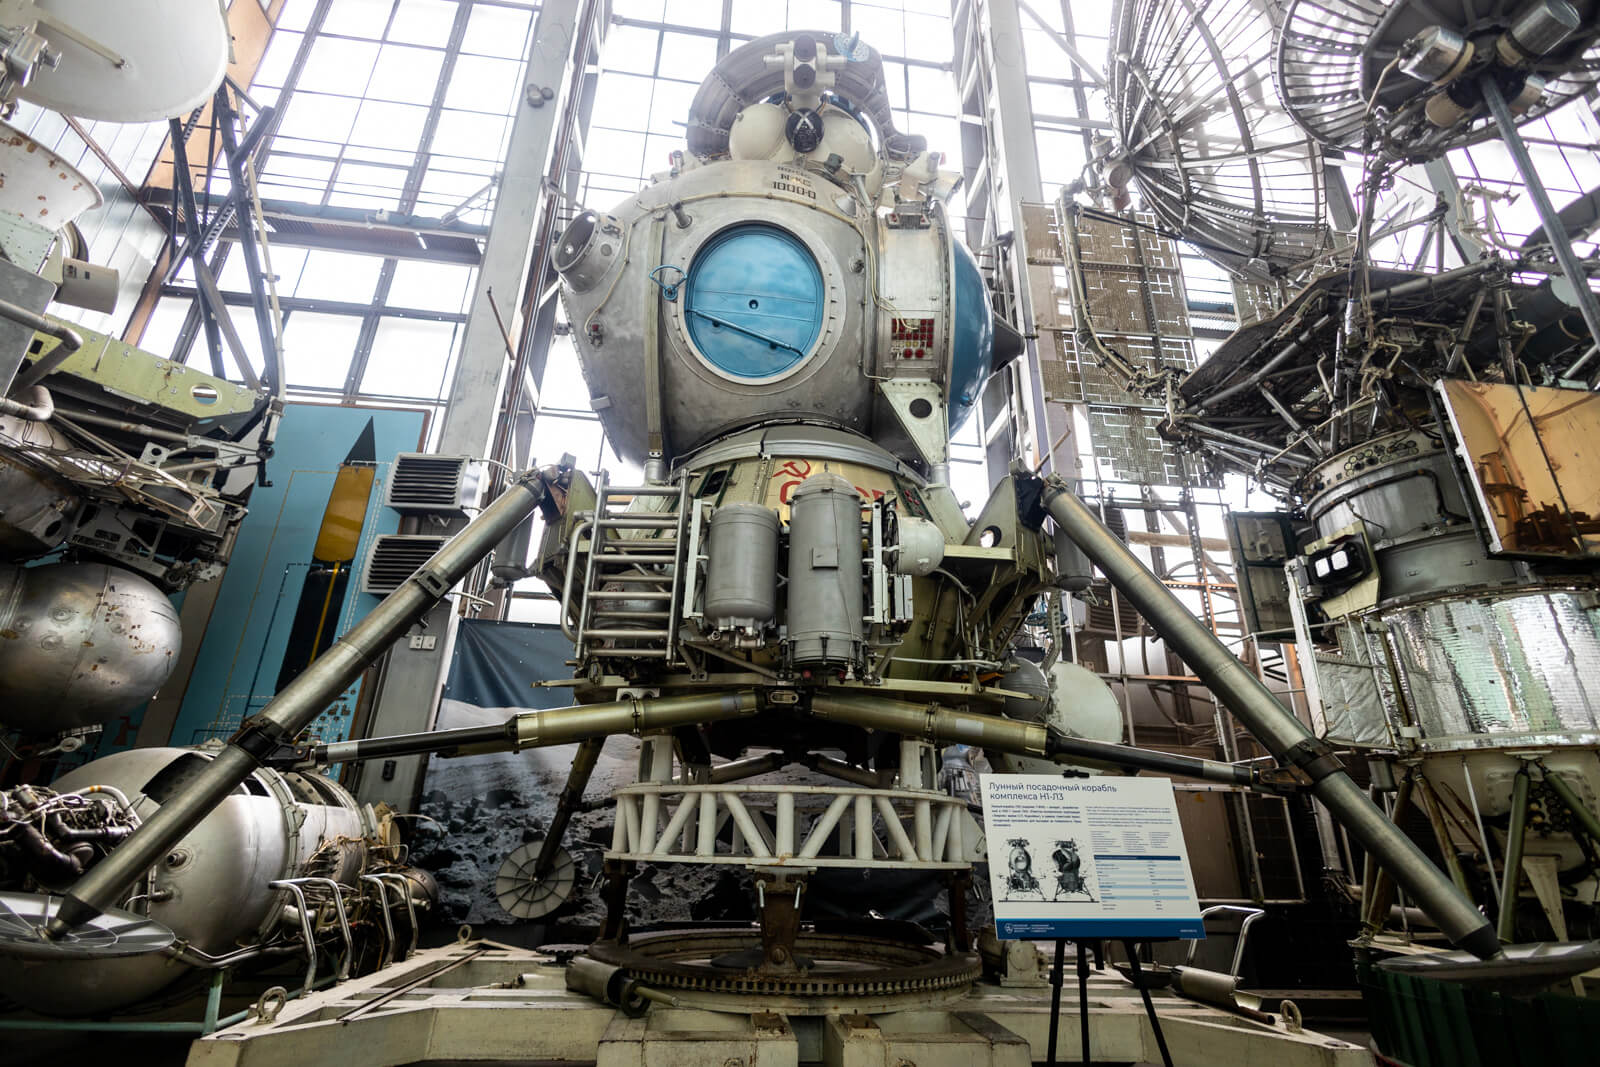 Посадочный лунный модуль 11Ф94, космический корабль «Союз», российская автоматическая межпланетная станция «Марс-96» и другие уникальные образцы ракетно-космической техники находятся в Центре.